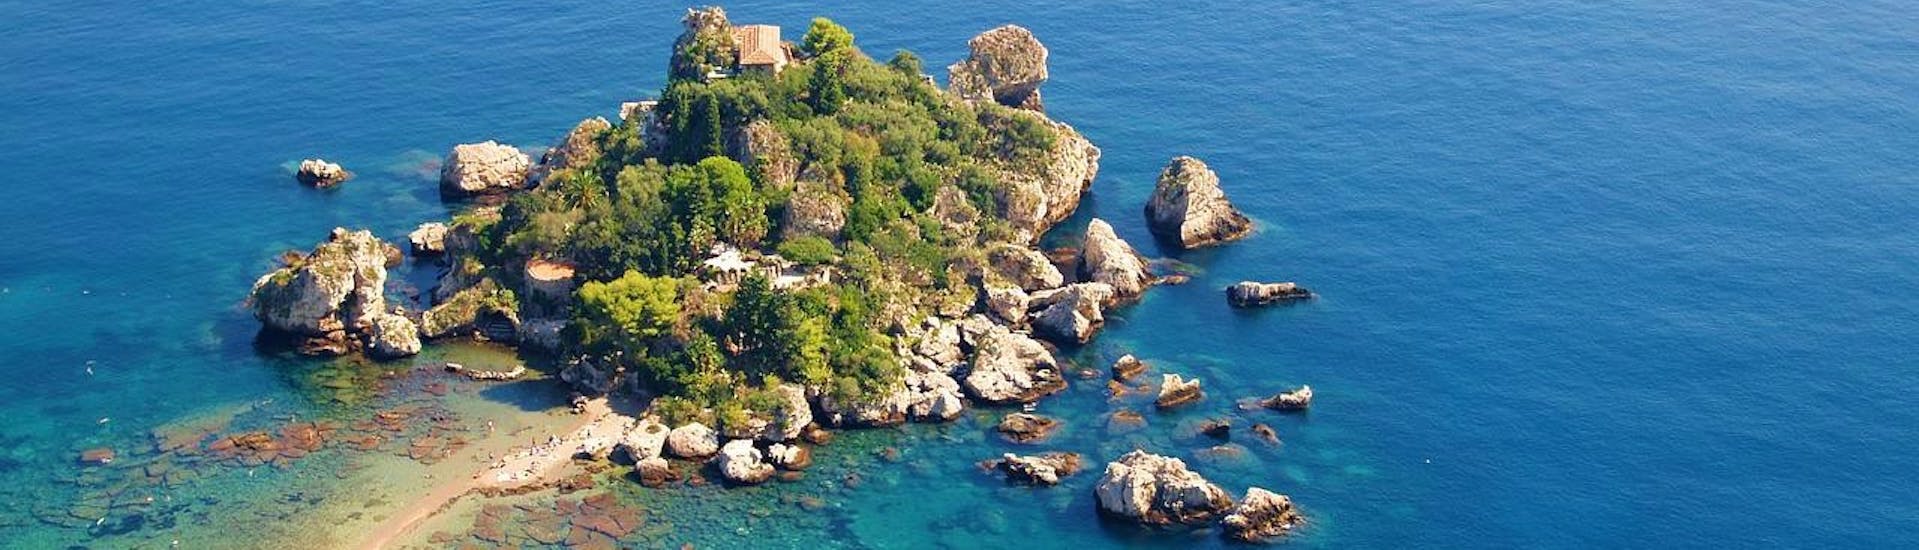 Bellissima foto dell'Isola Bella, che potrete visitare durante la nostra escursione in barca da Giardini Naxos lungo la costa di Taormina con Enjoy Sicily.